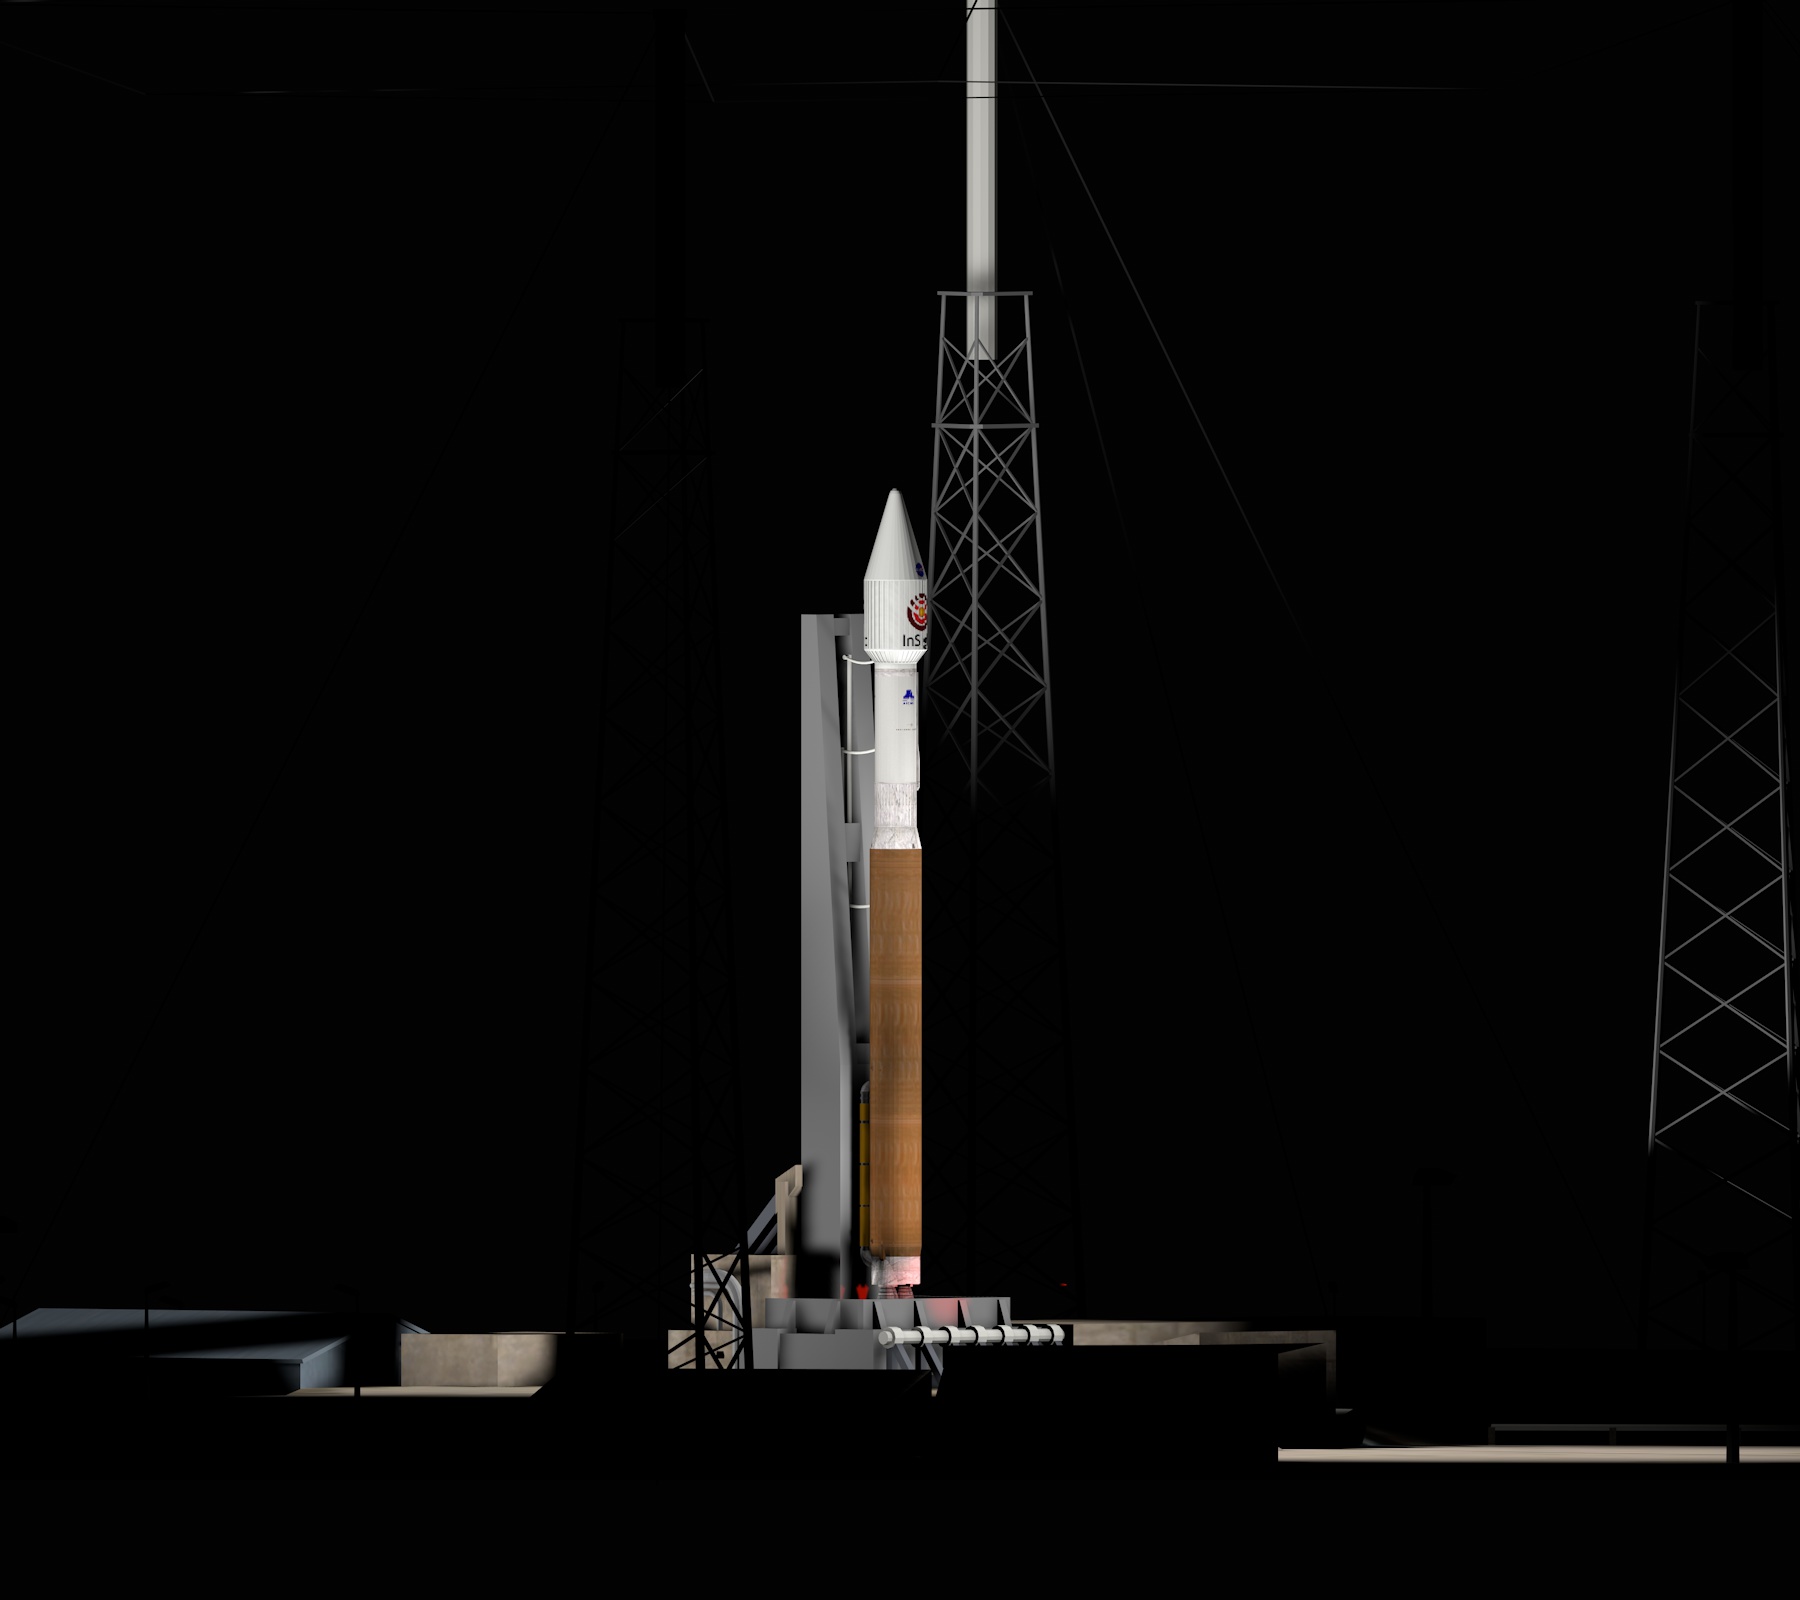 atlas v 078 on launch pad.jpg